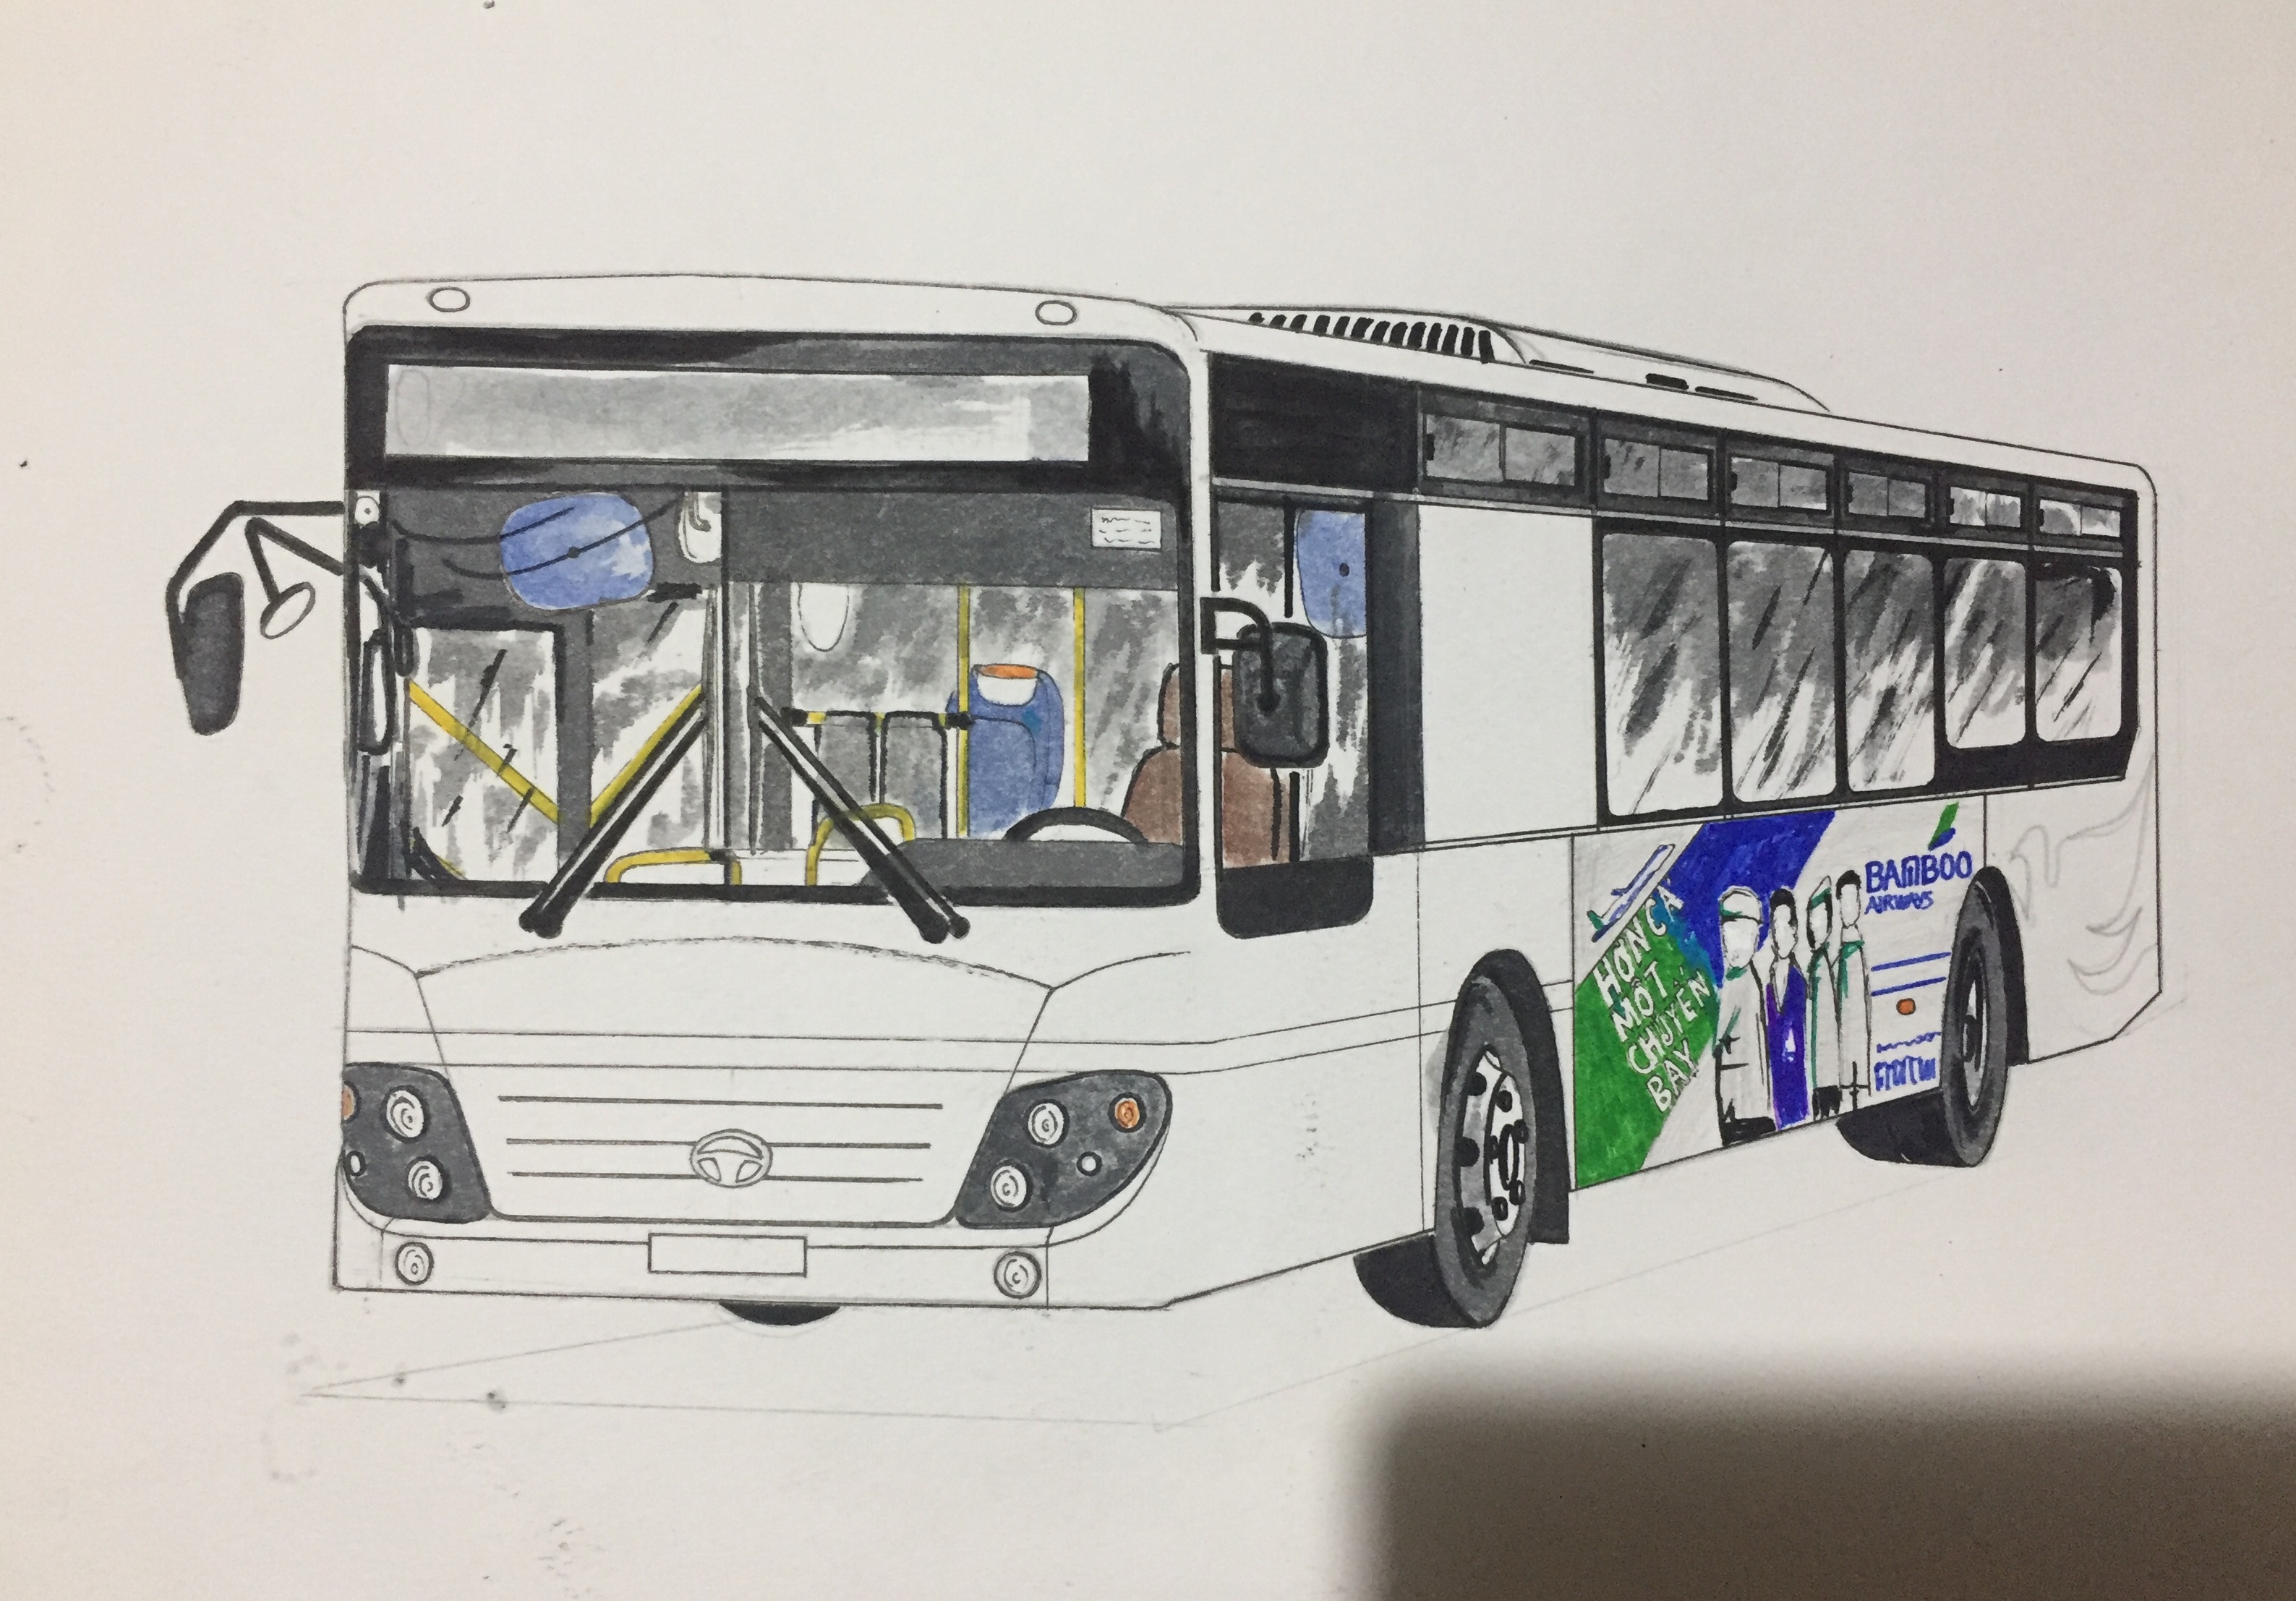 Xe buýt Hà Nội, đó chính là chủ đề chúng tôi muốn giới thiệu đến bạn. Hãy ngắm nhìn chiếc xe buýt màu xanh lá cây trên đường phố Hà Nội. Bức tranh sẽ đưa bạn đến thế giới của những chuyến hành trình hấp dẫn và tuyệt vời.